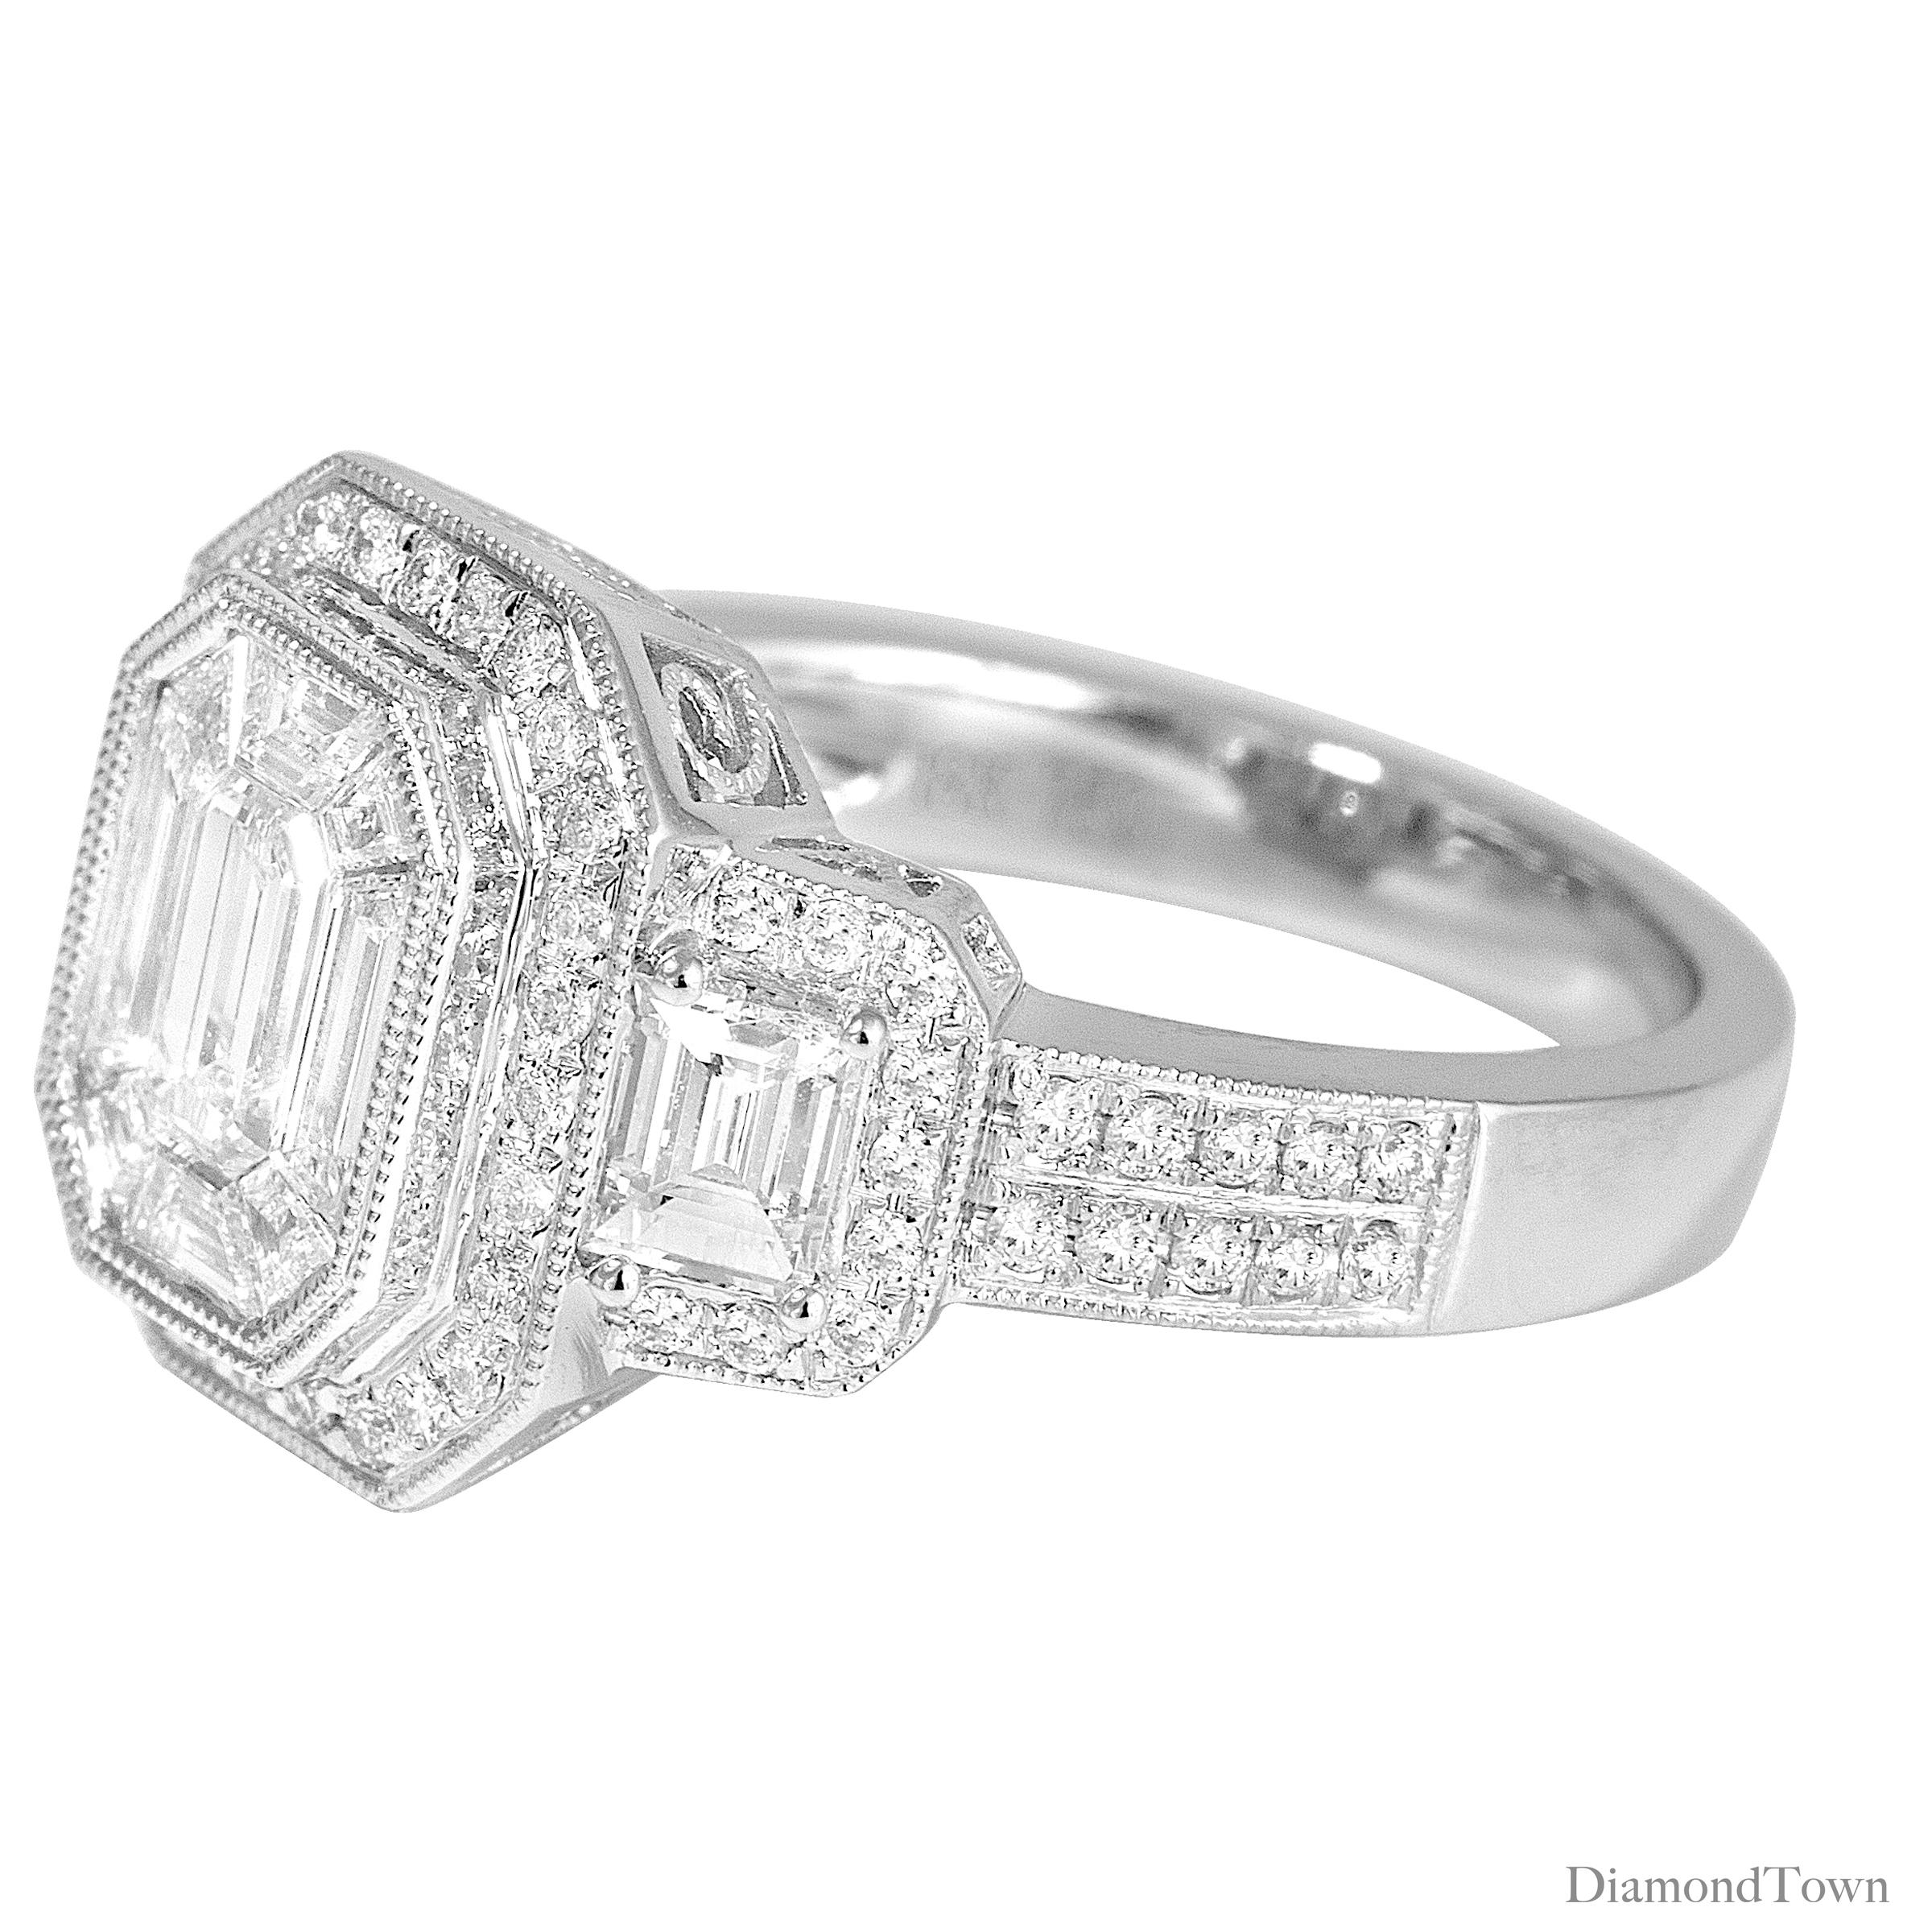 (DiamondTown) This gorgeous ring has an 